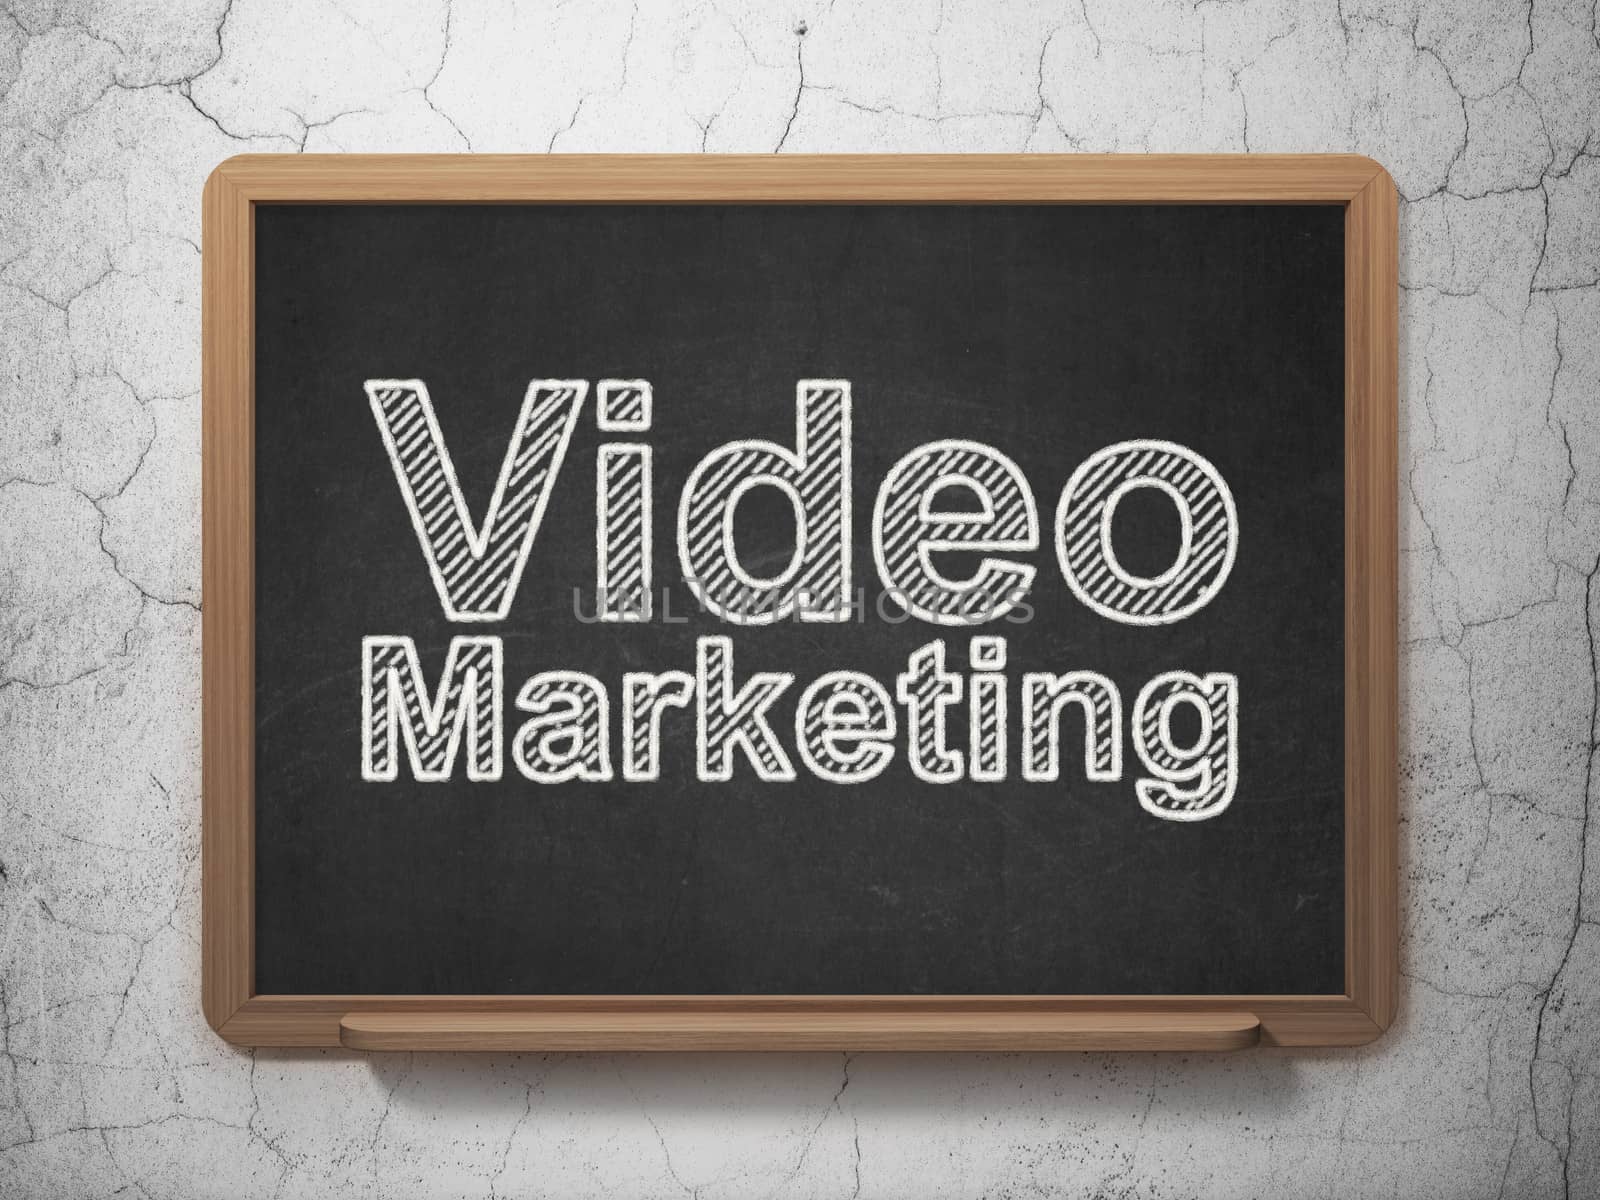 Finance concept: Video Marketing on chalkboard background by maxkabakov